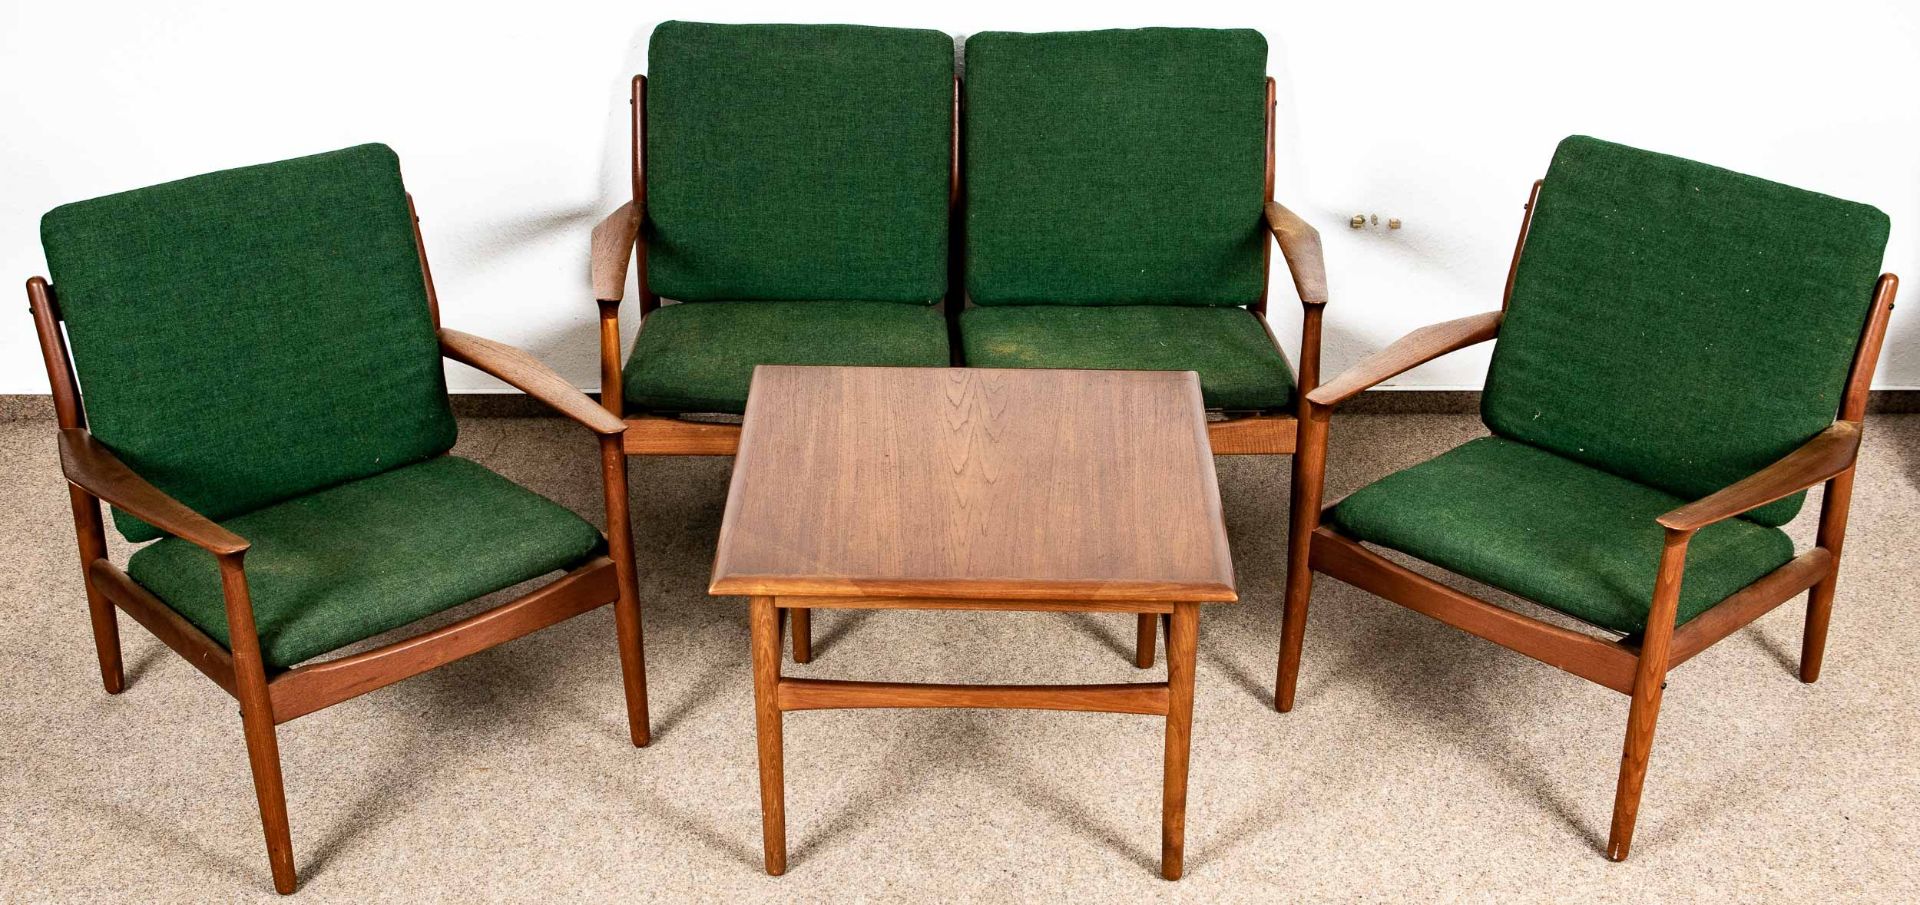 4teilige Teakholz - Sitzgarnitur, Danisch Design der 1950er/60er Jahre, bestehend aus zweisitziger - Image 3 of 5